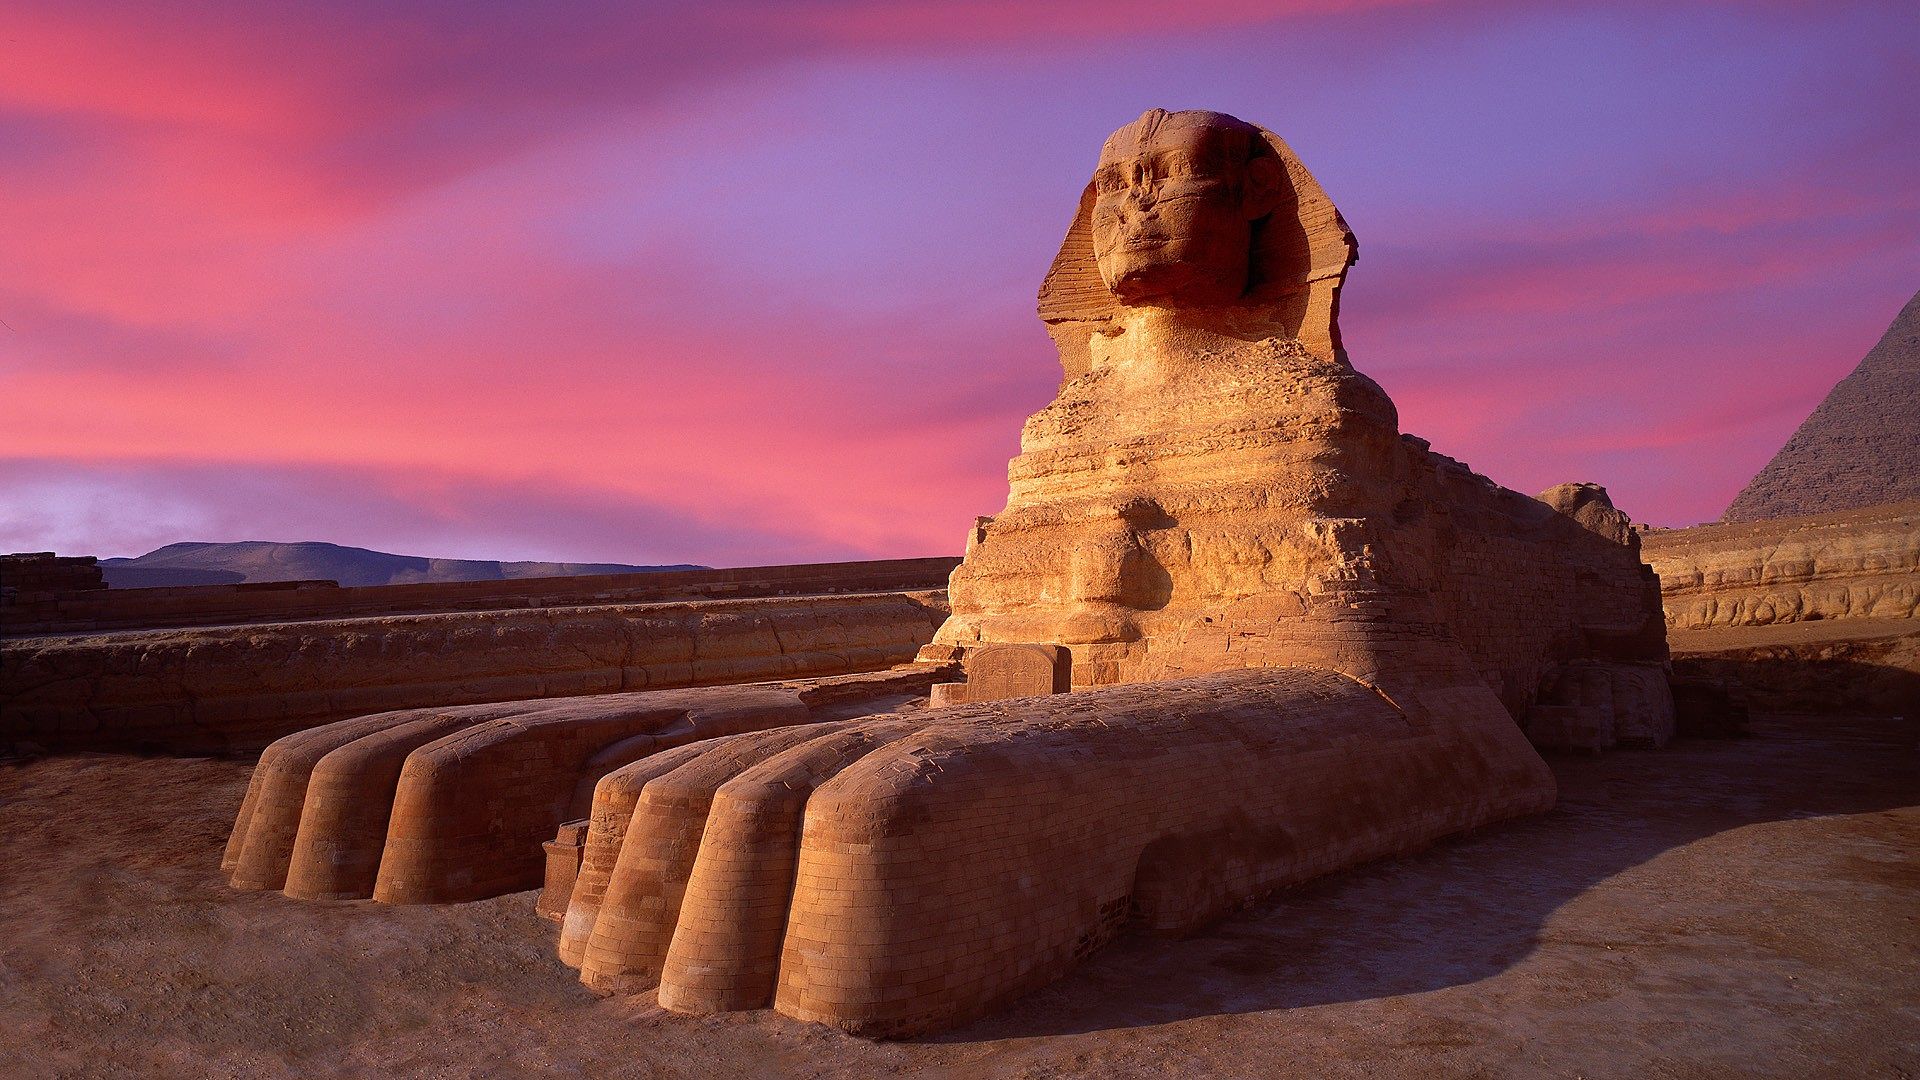 أهرامات الجيزة و أبو الهول خلفيات وصور عالية الجودة Pyramids of Giza and the Sphinx HD 0513